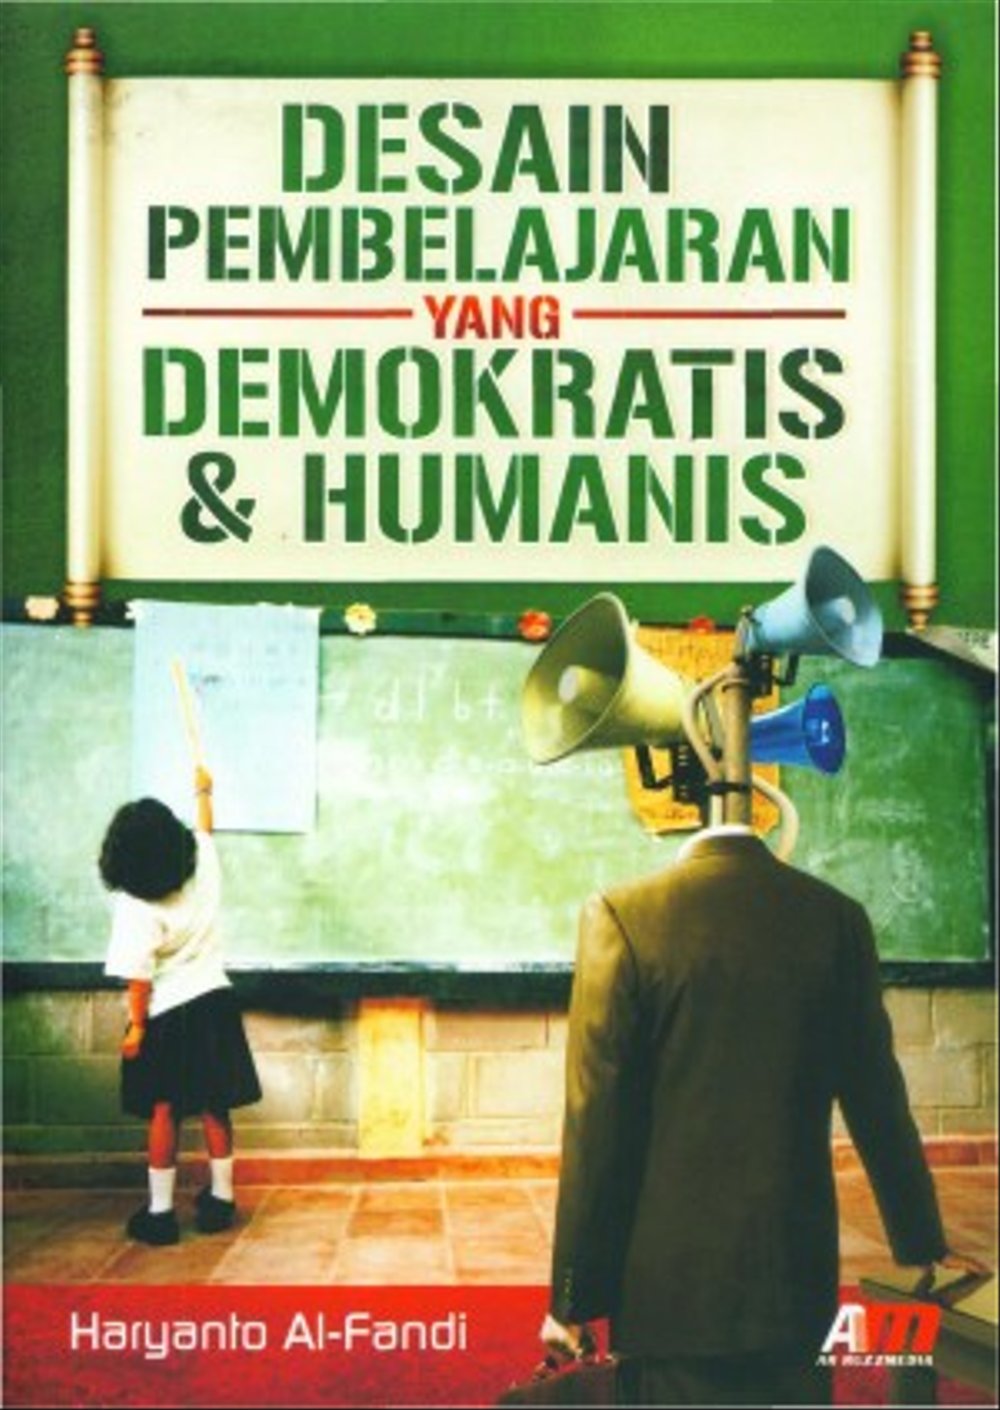 Desain Pembelajaran yang Demokratis & Humanis